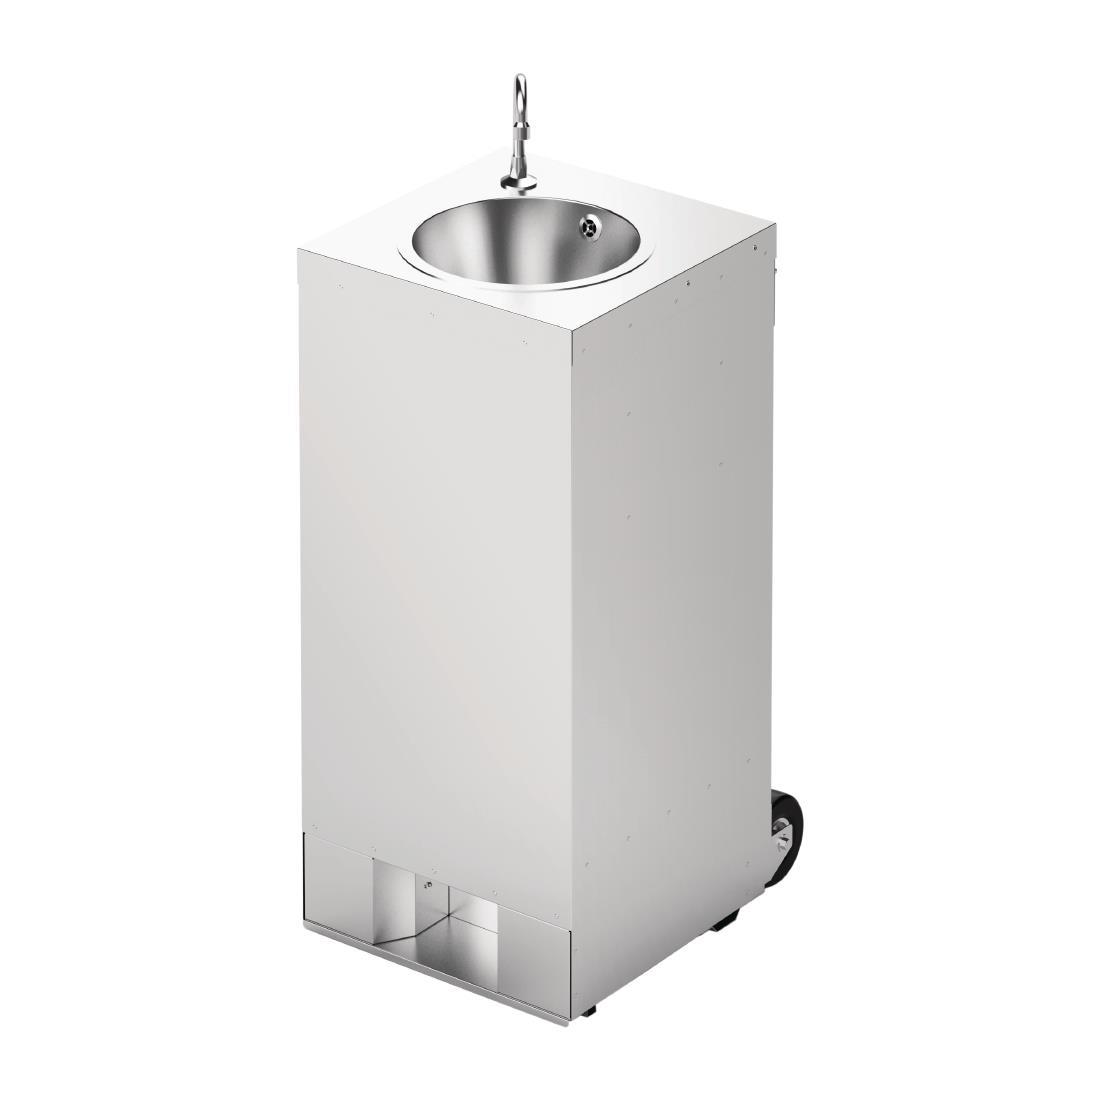 IMC Mobile Hot Water Hand Wash Station 10Ltr - DA248  - 4